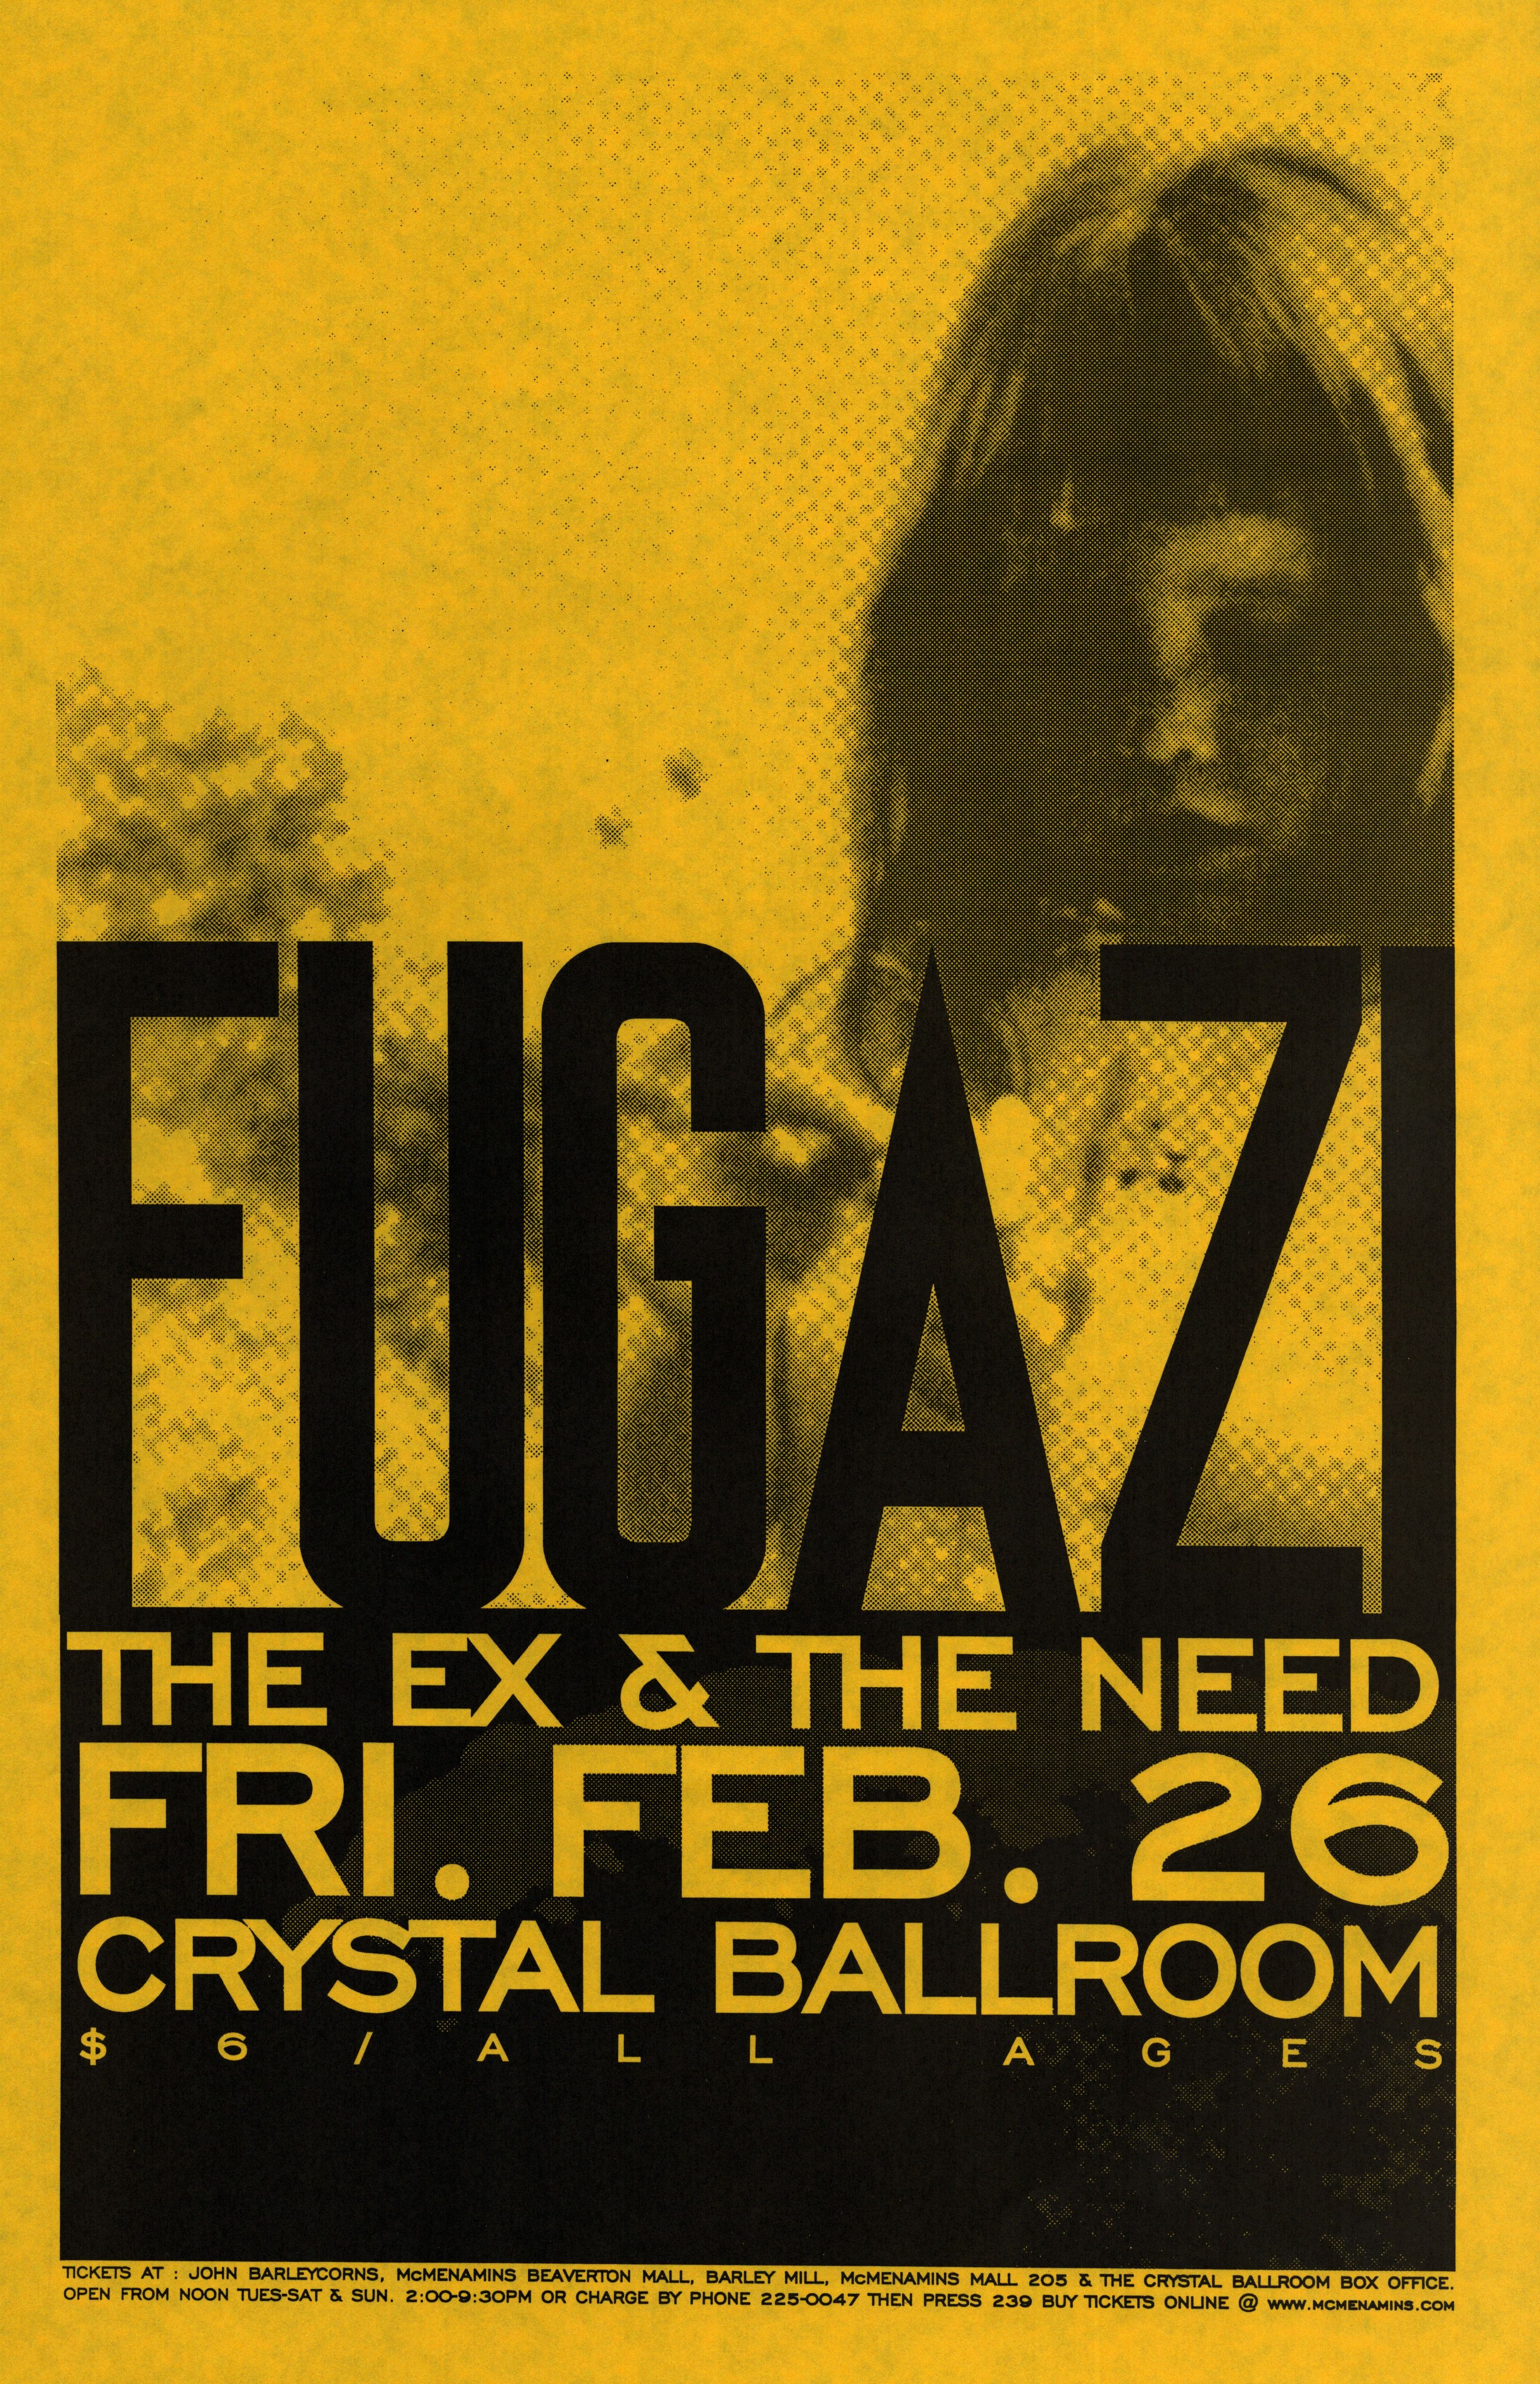 MXP-62.2 Fugazi 1999 Crystal Ballroom  Feb 26 Concert Poster